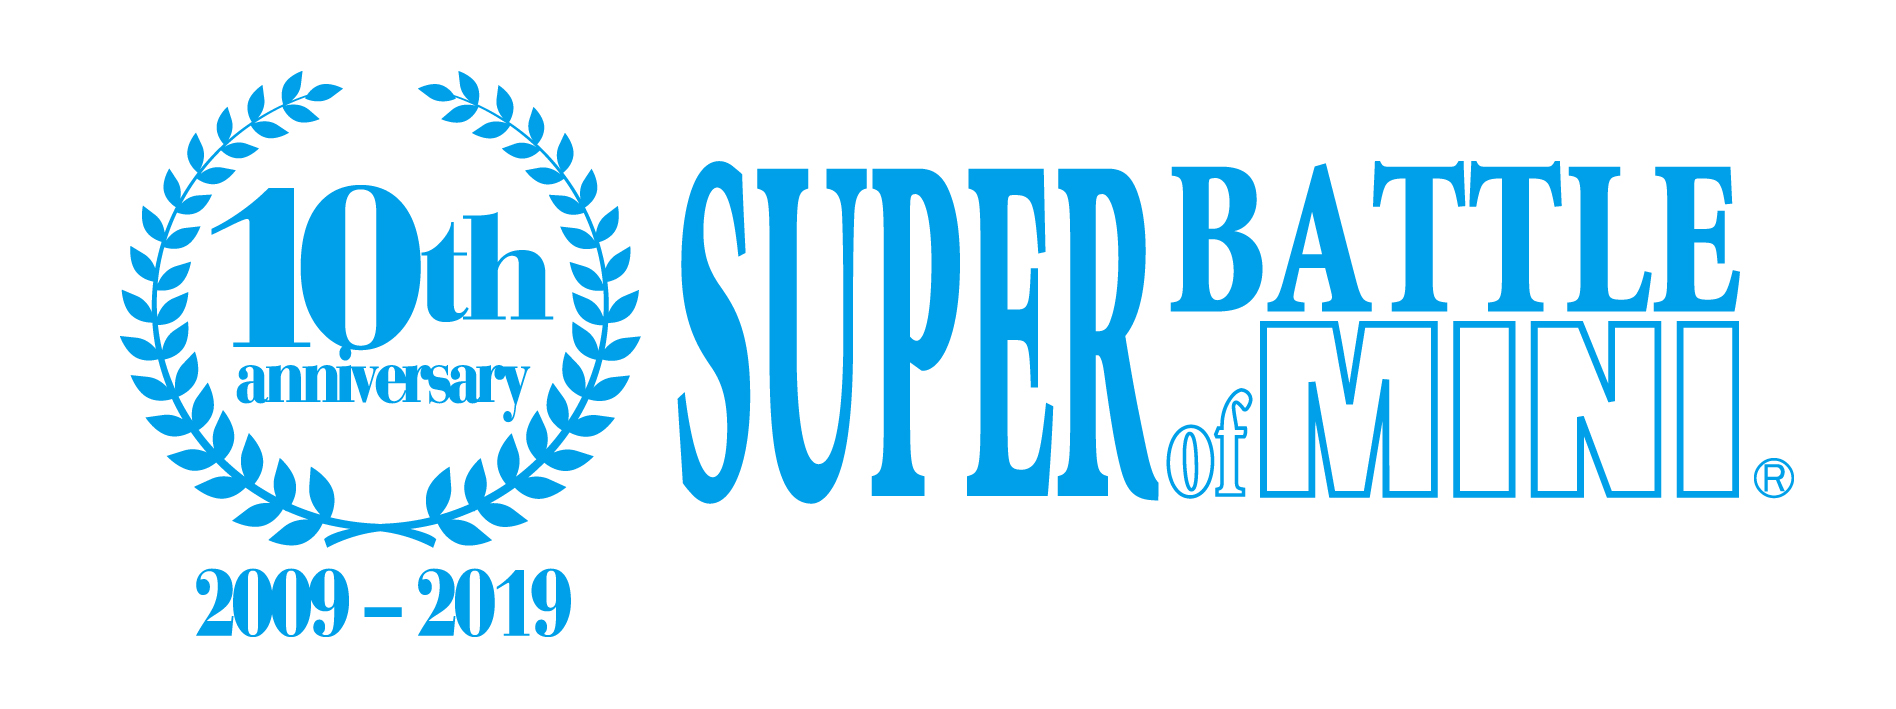 SUPER BATTLE of MINI 第 4 戦 (最終戦)  タイムスケジュール